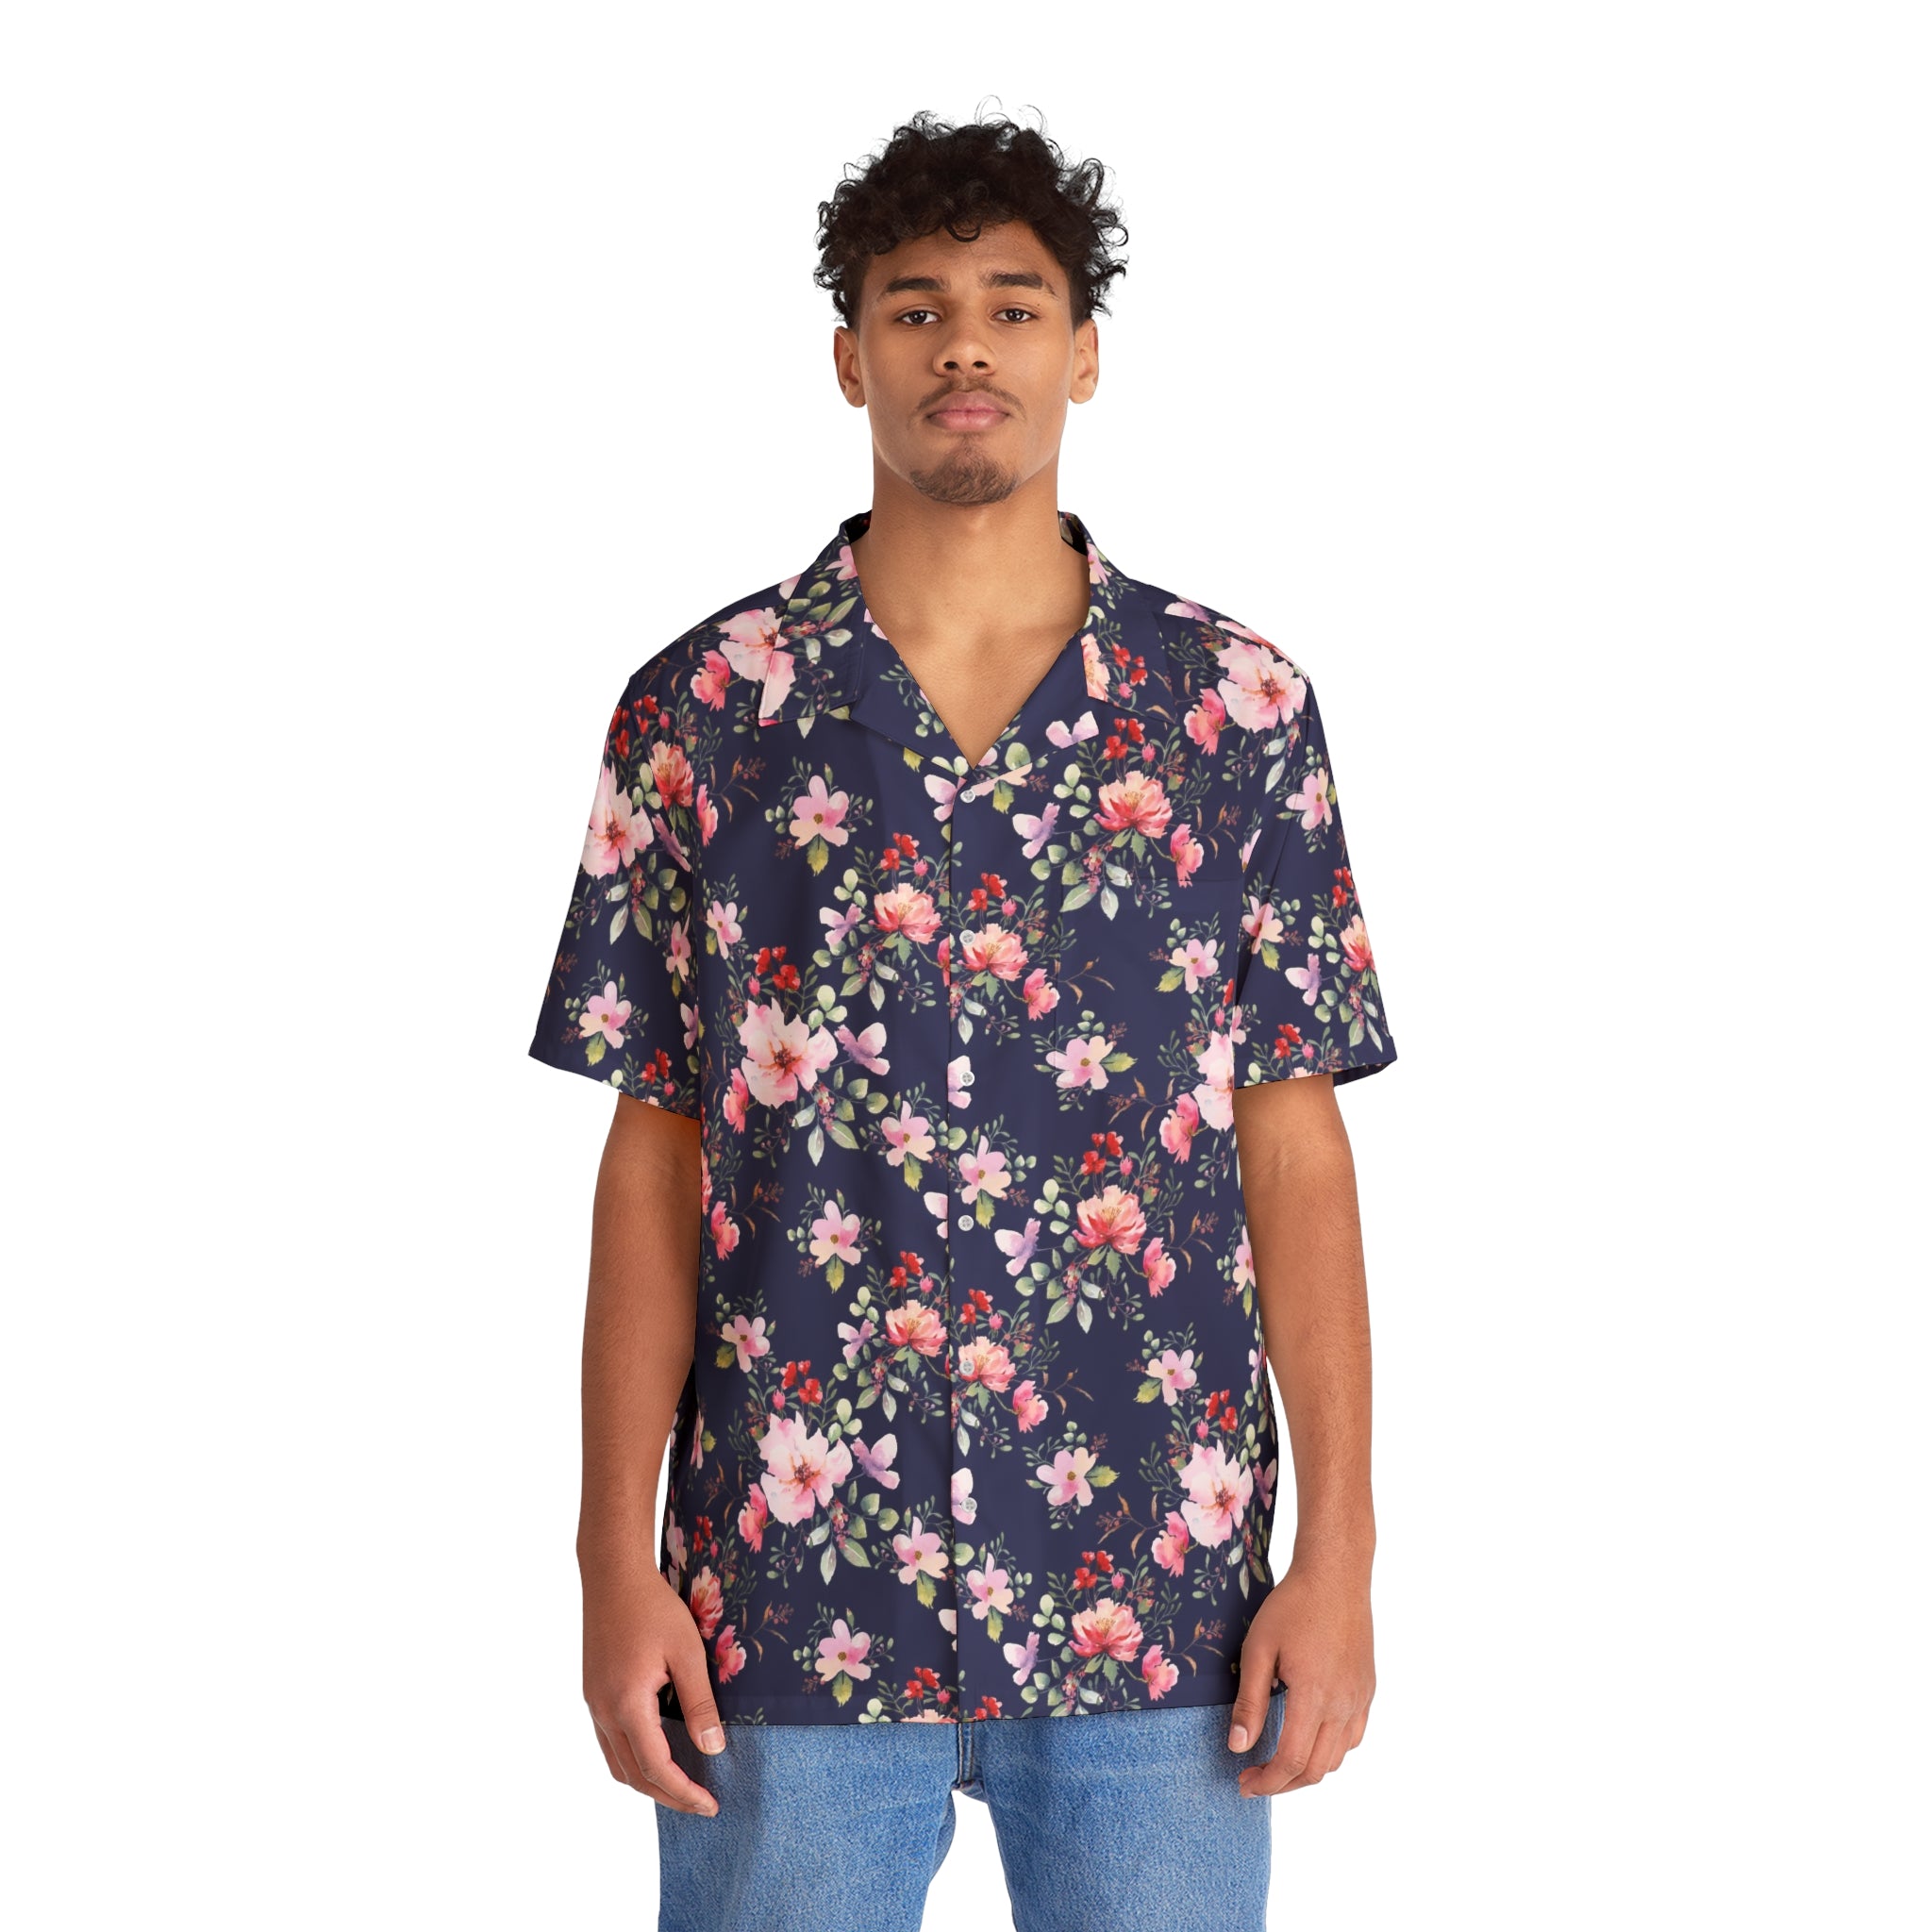 TBP Navy Floral Hawaiian Shirt